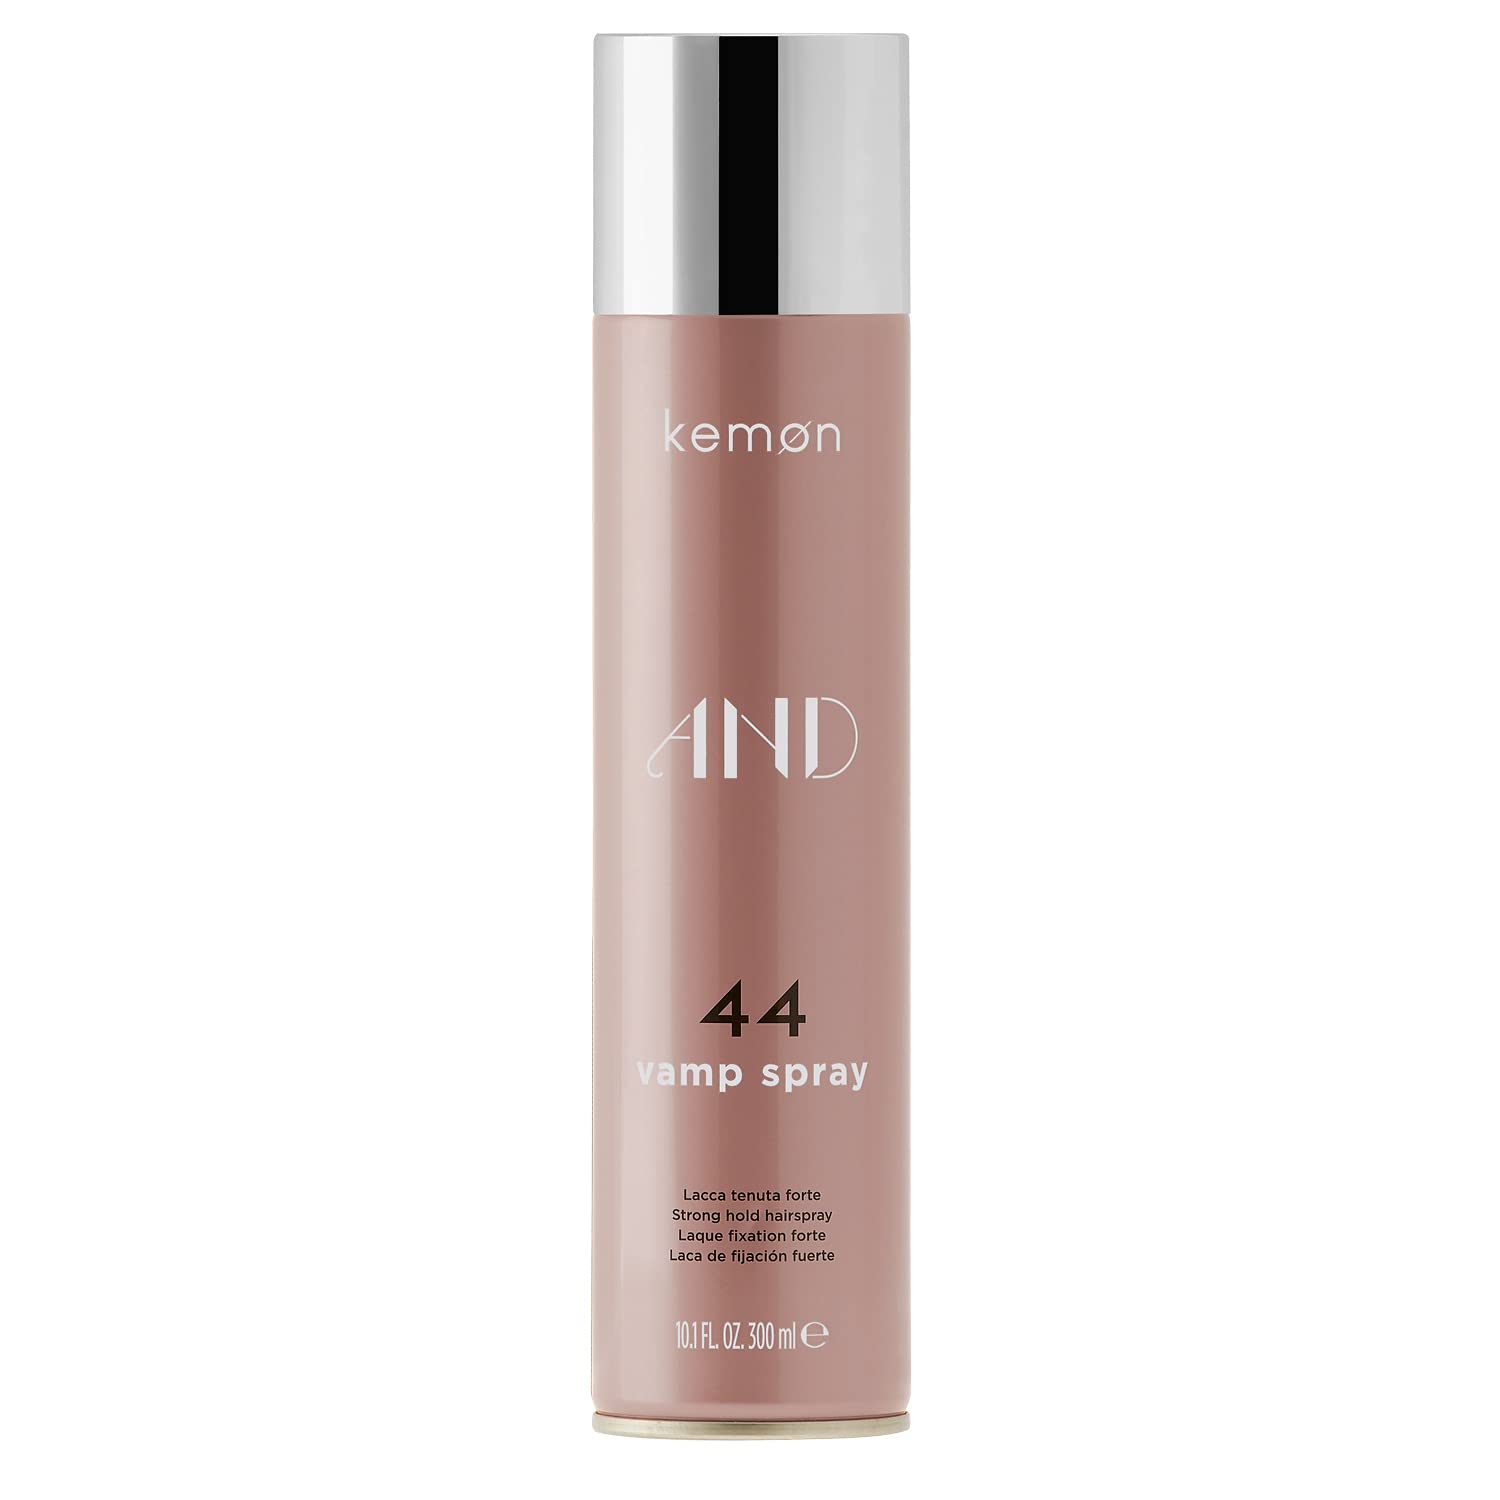 Kemon AND 44 Vamp Spray - Haarspray für starken Halt, geeignet für alle Haartypen, Haar-Pflege in Friseur-Qualität - 300 ml